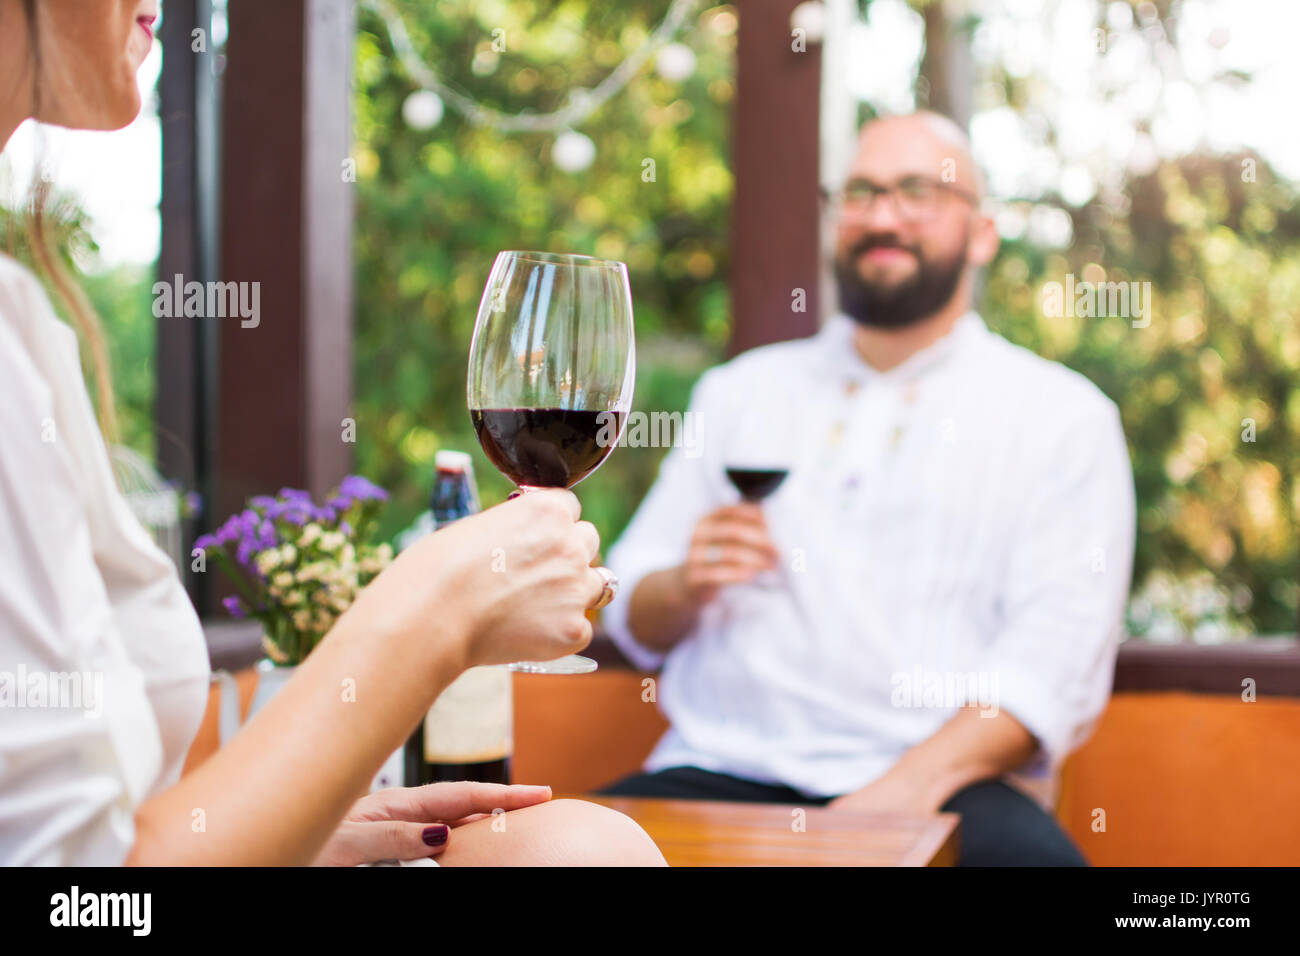 Paar trinken ein Glas Wein auf einem Datum Stockfoto